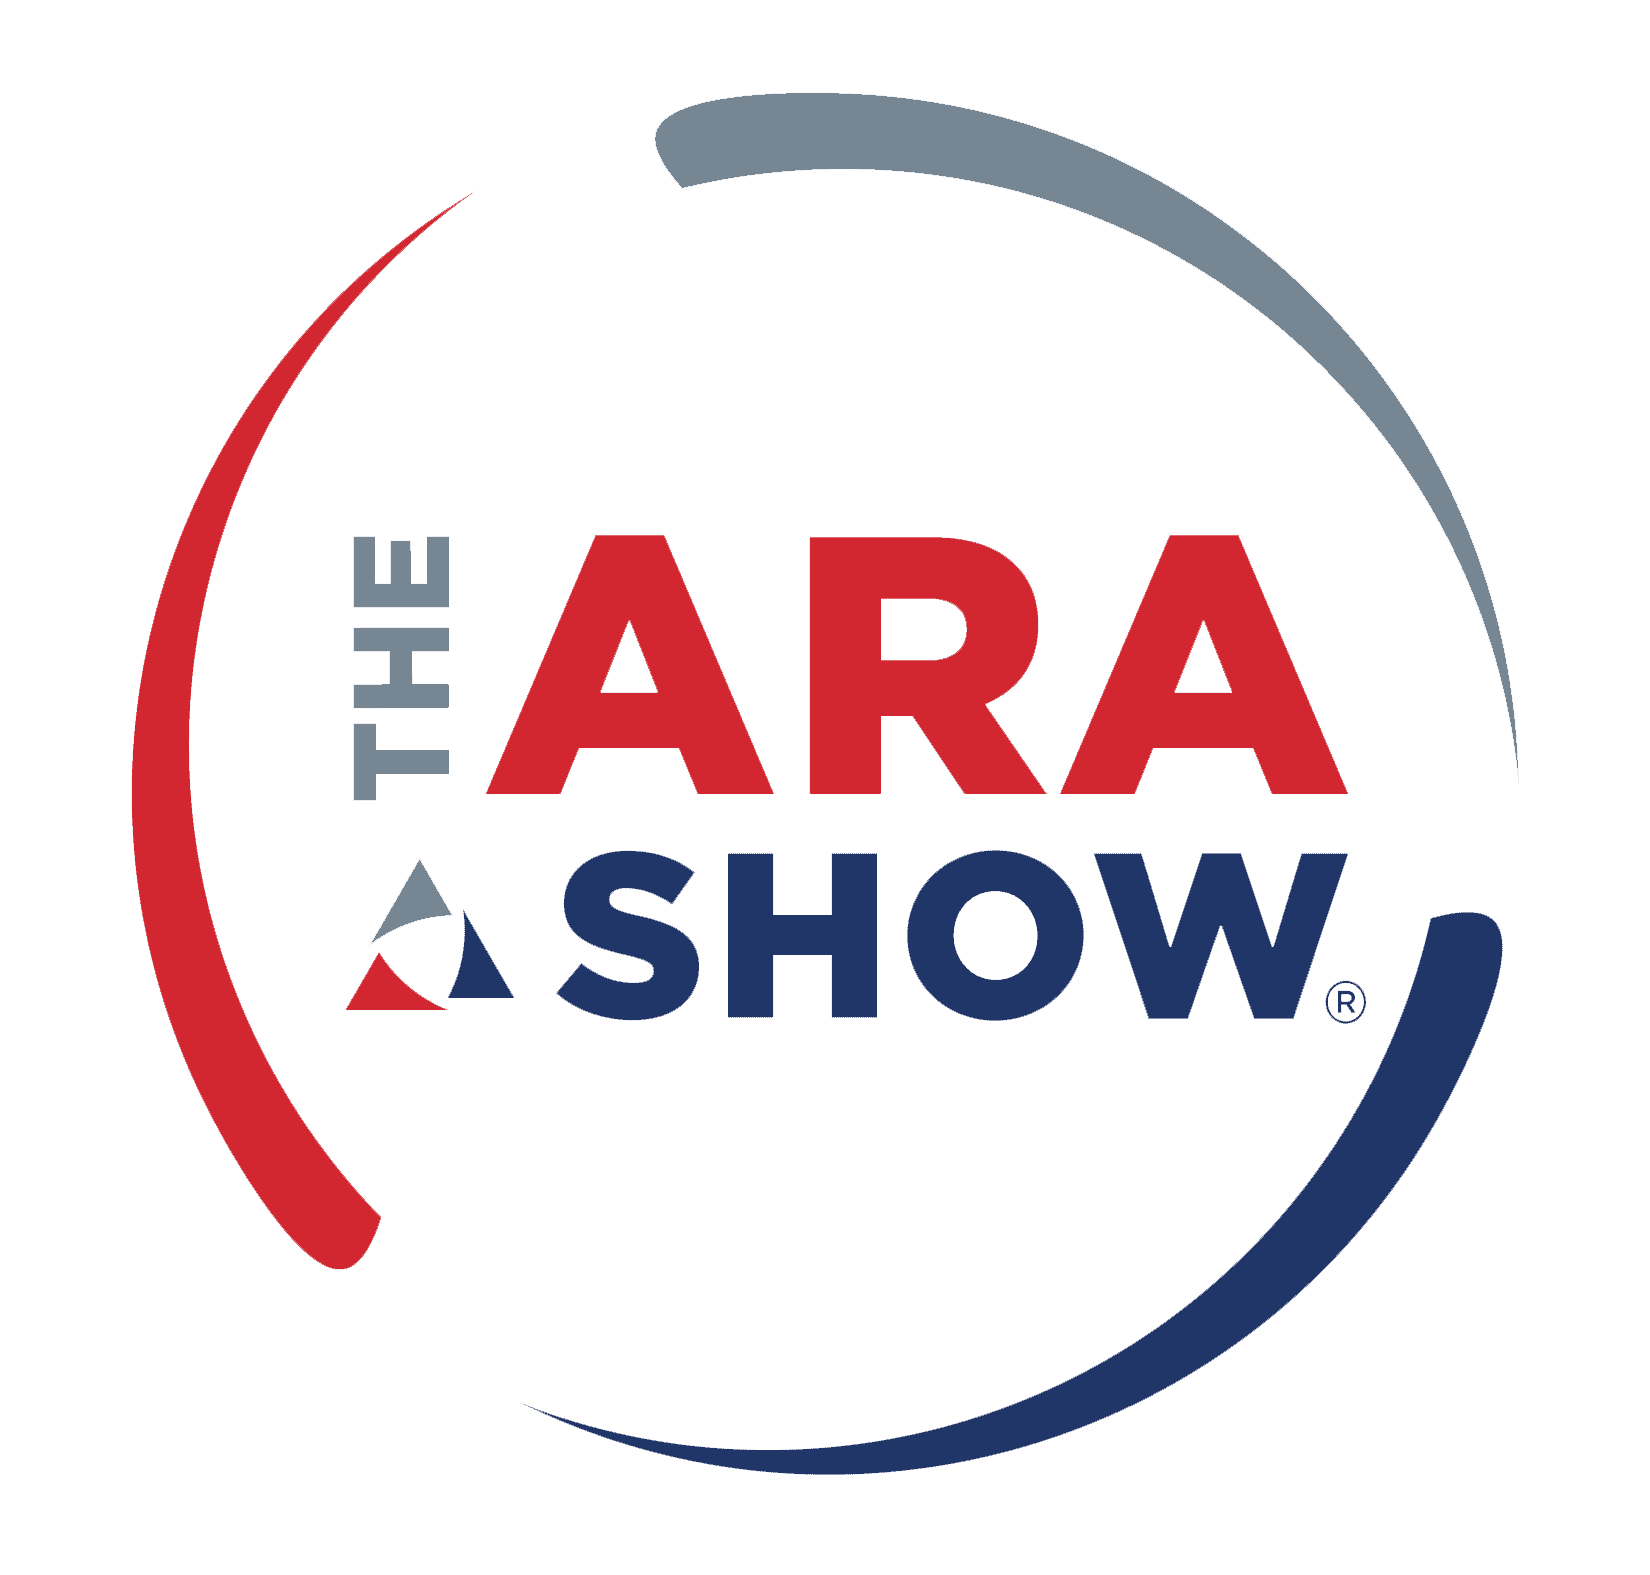 The ARA Show